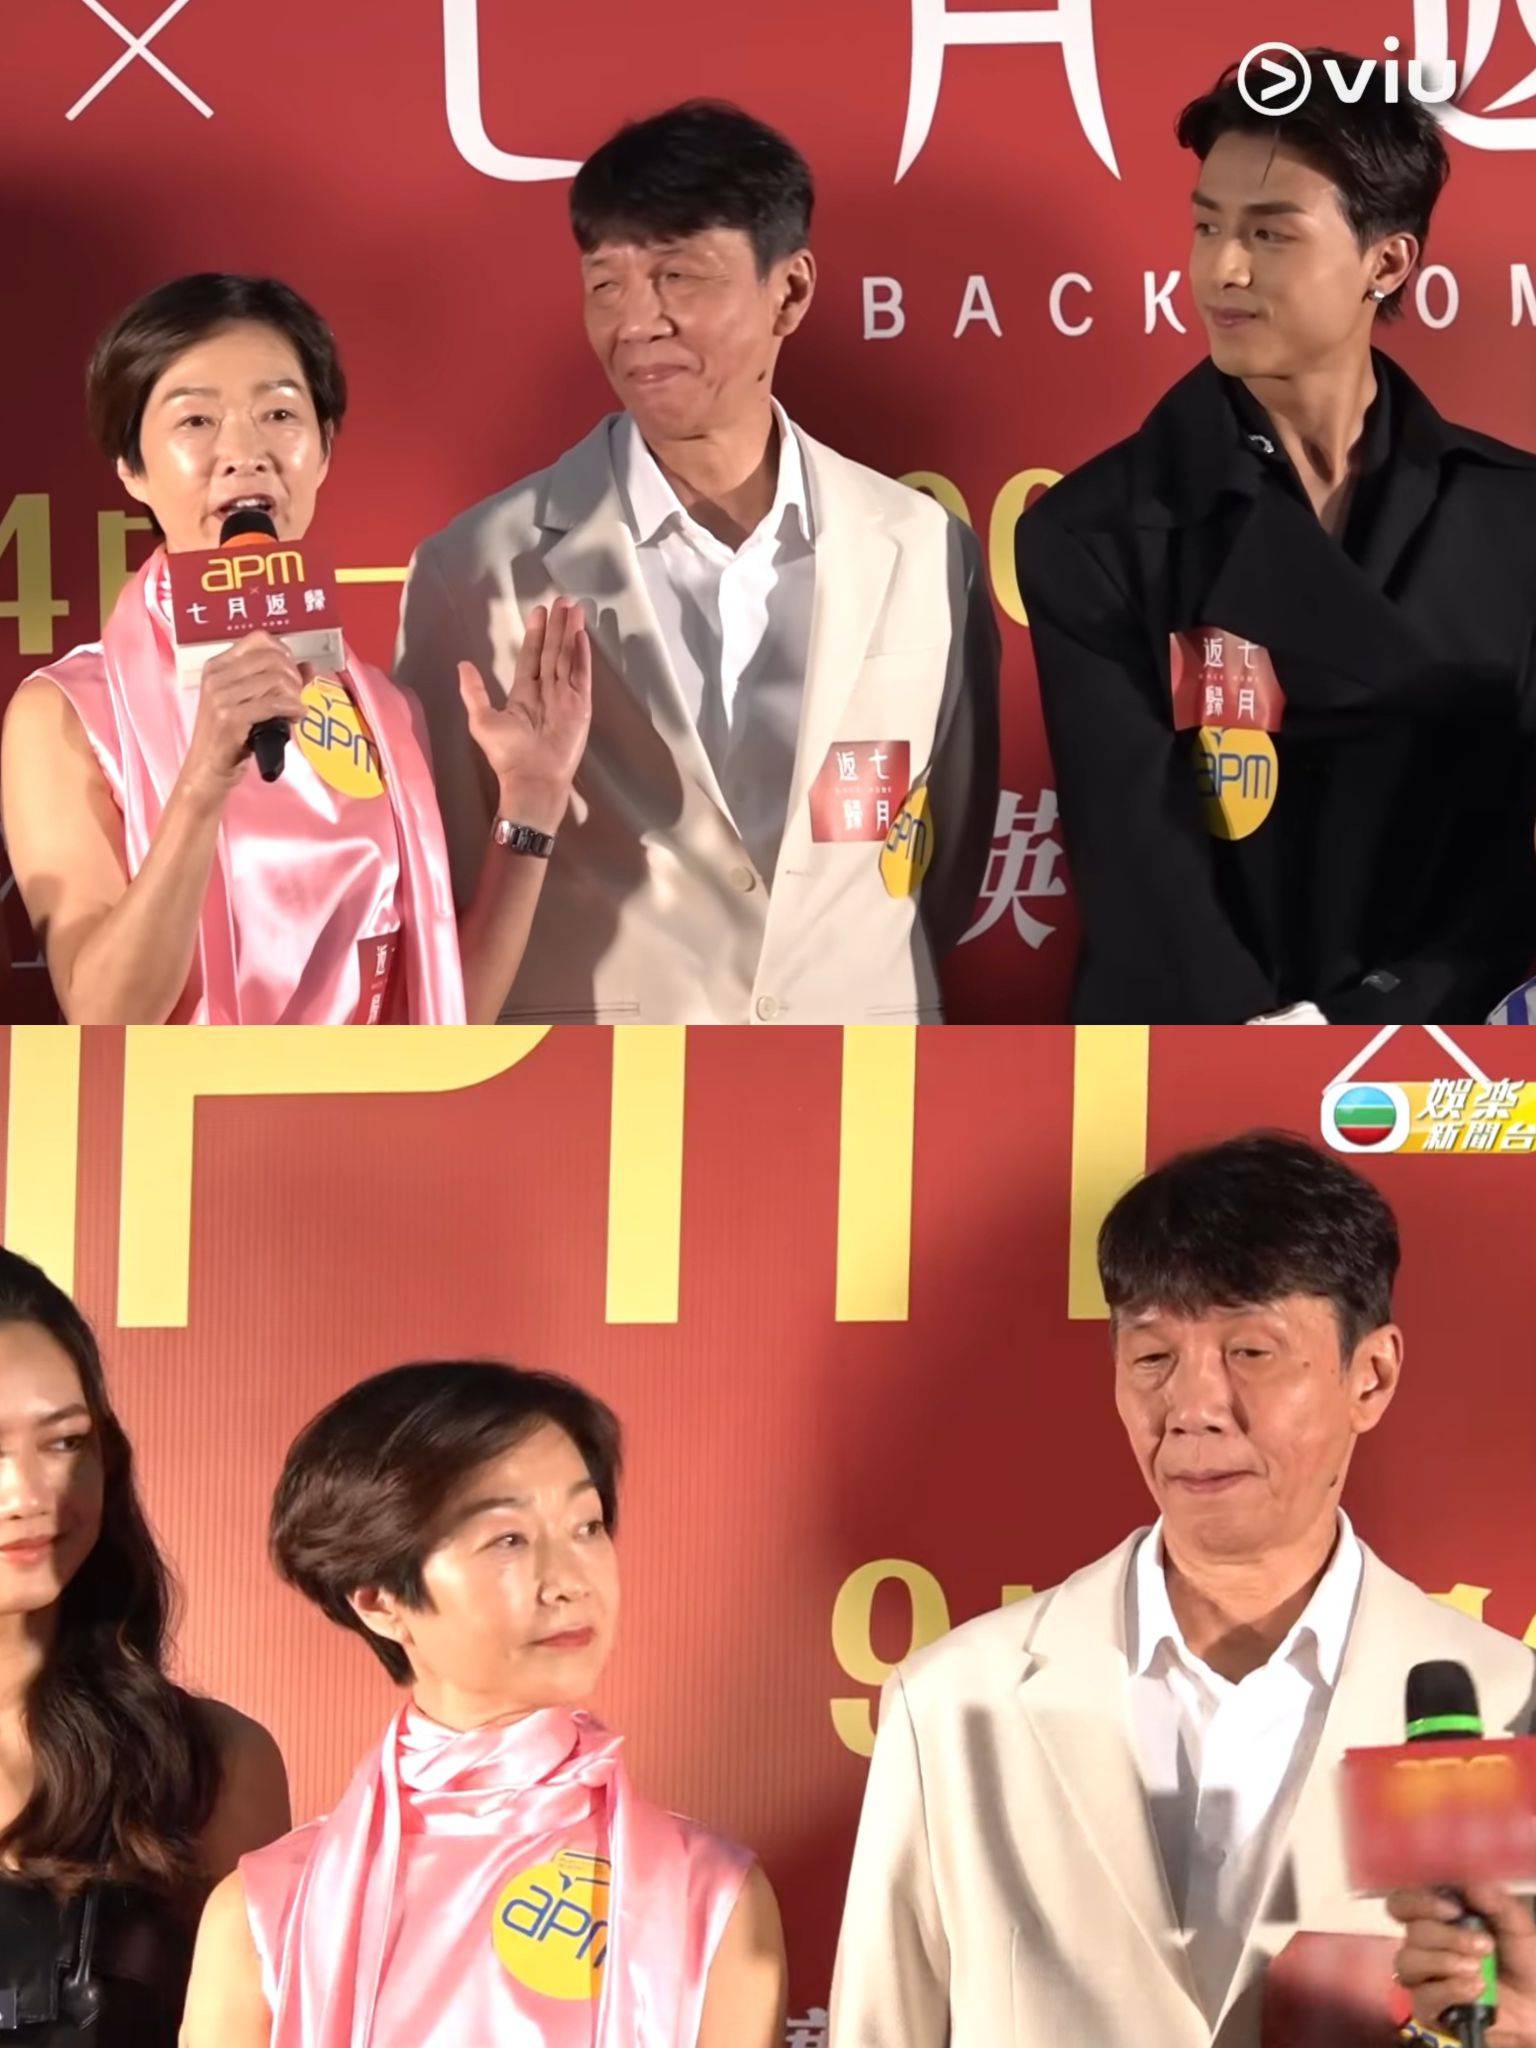 七月返歸 ak 《TVB娛樂新聞台》播出嘅訪問片中，強行剪走AK出現的畫面。